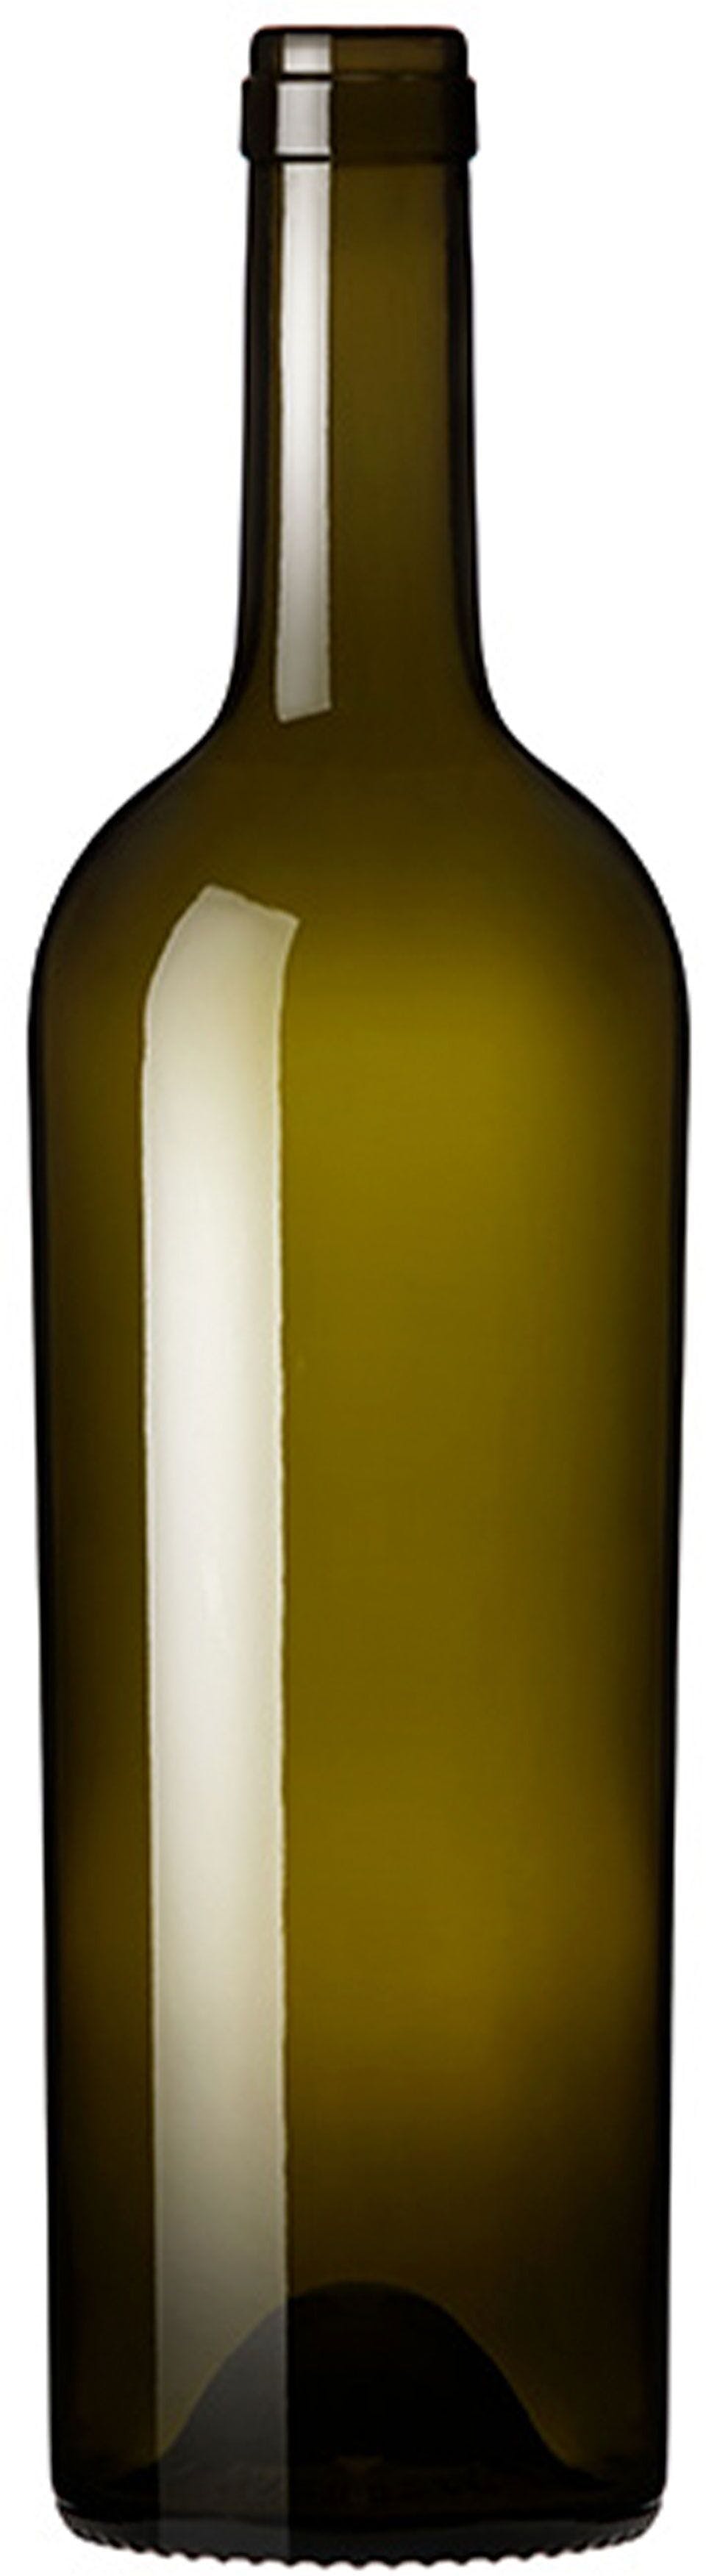 Bottle BORD JUMBO 750 LT S UVAG